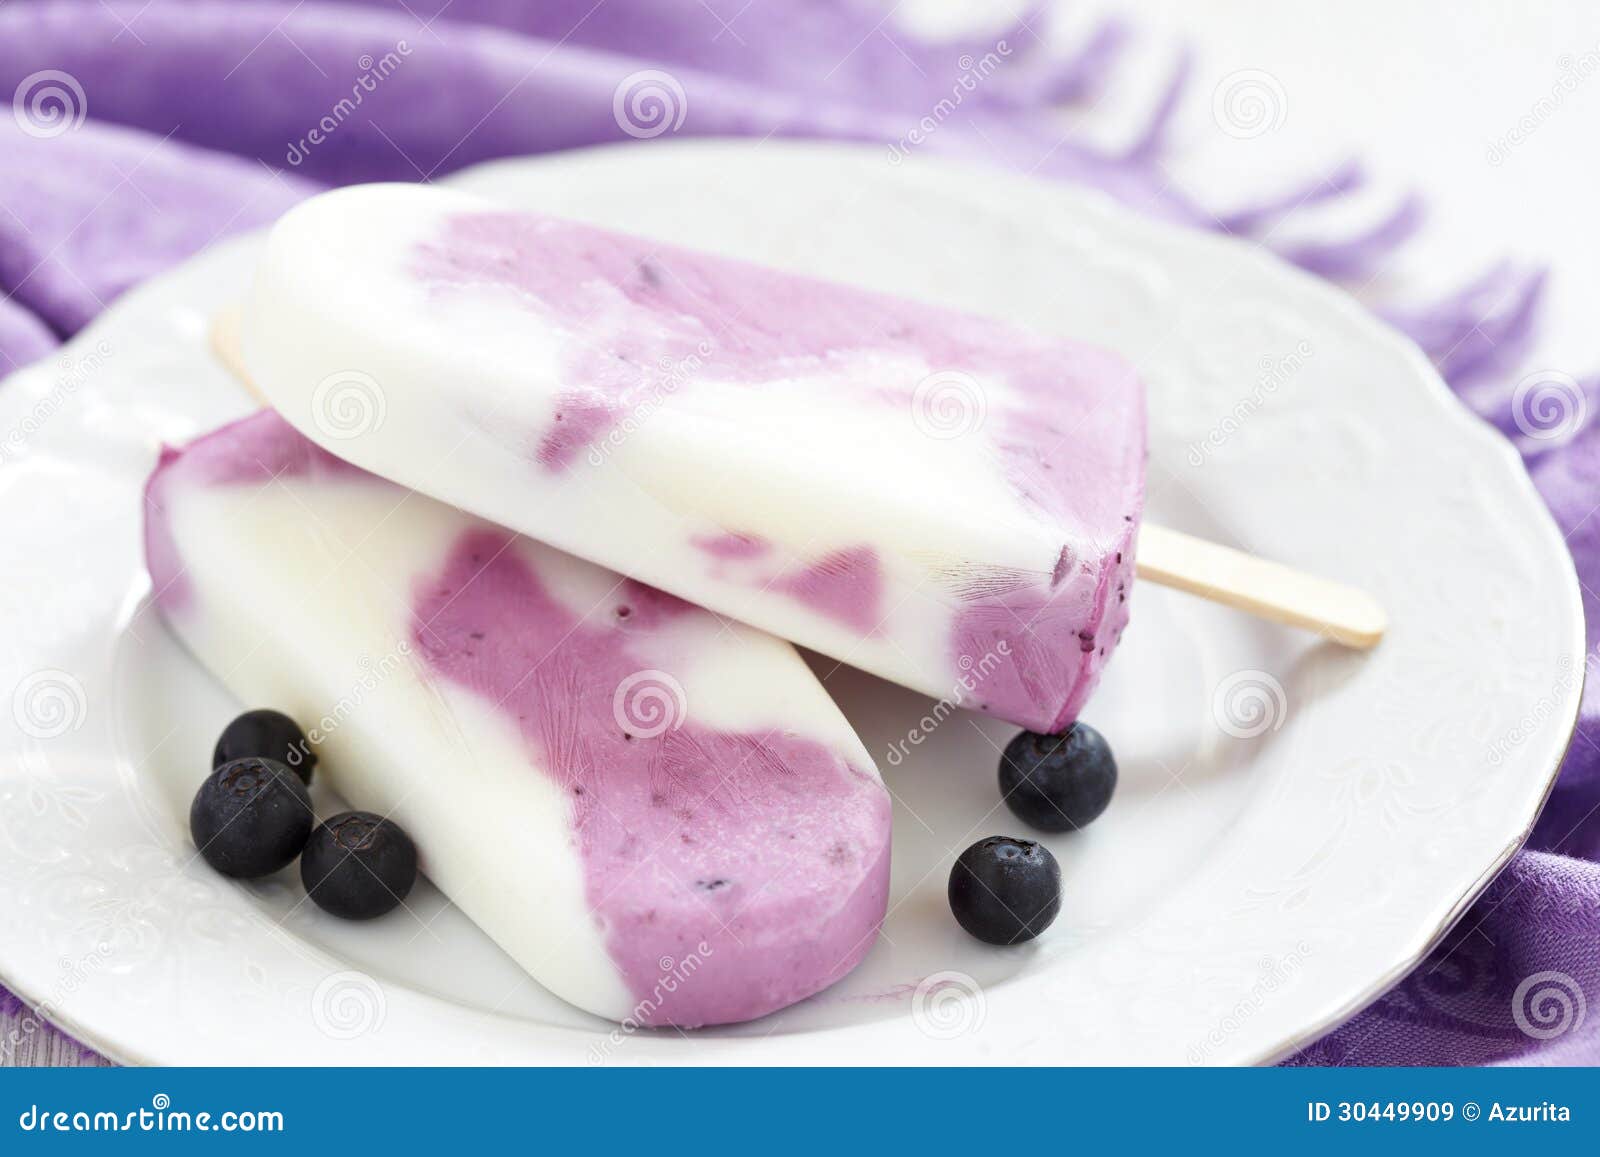 蓝莓冰激凌素材图片下载-素材编号00758575-素材天下图库